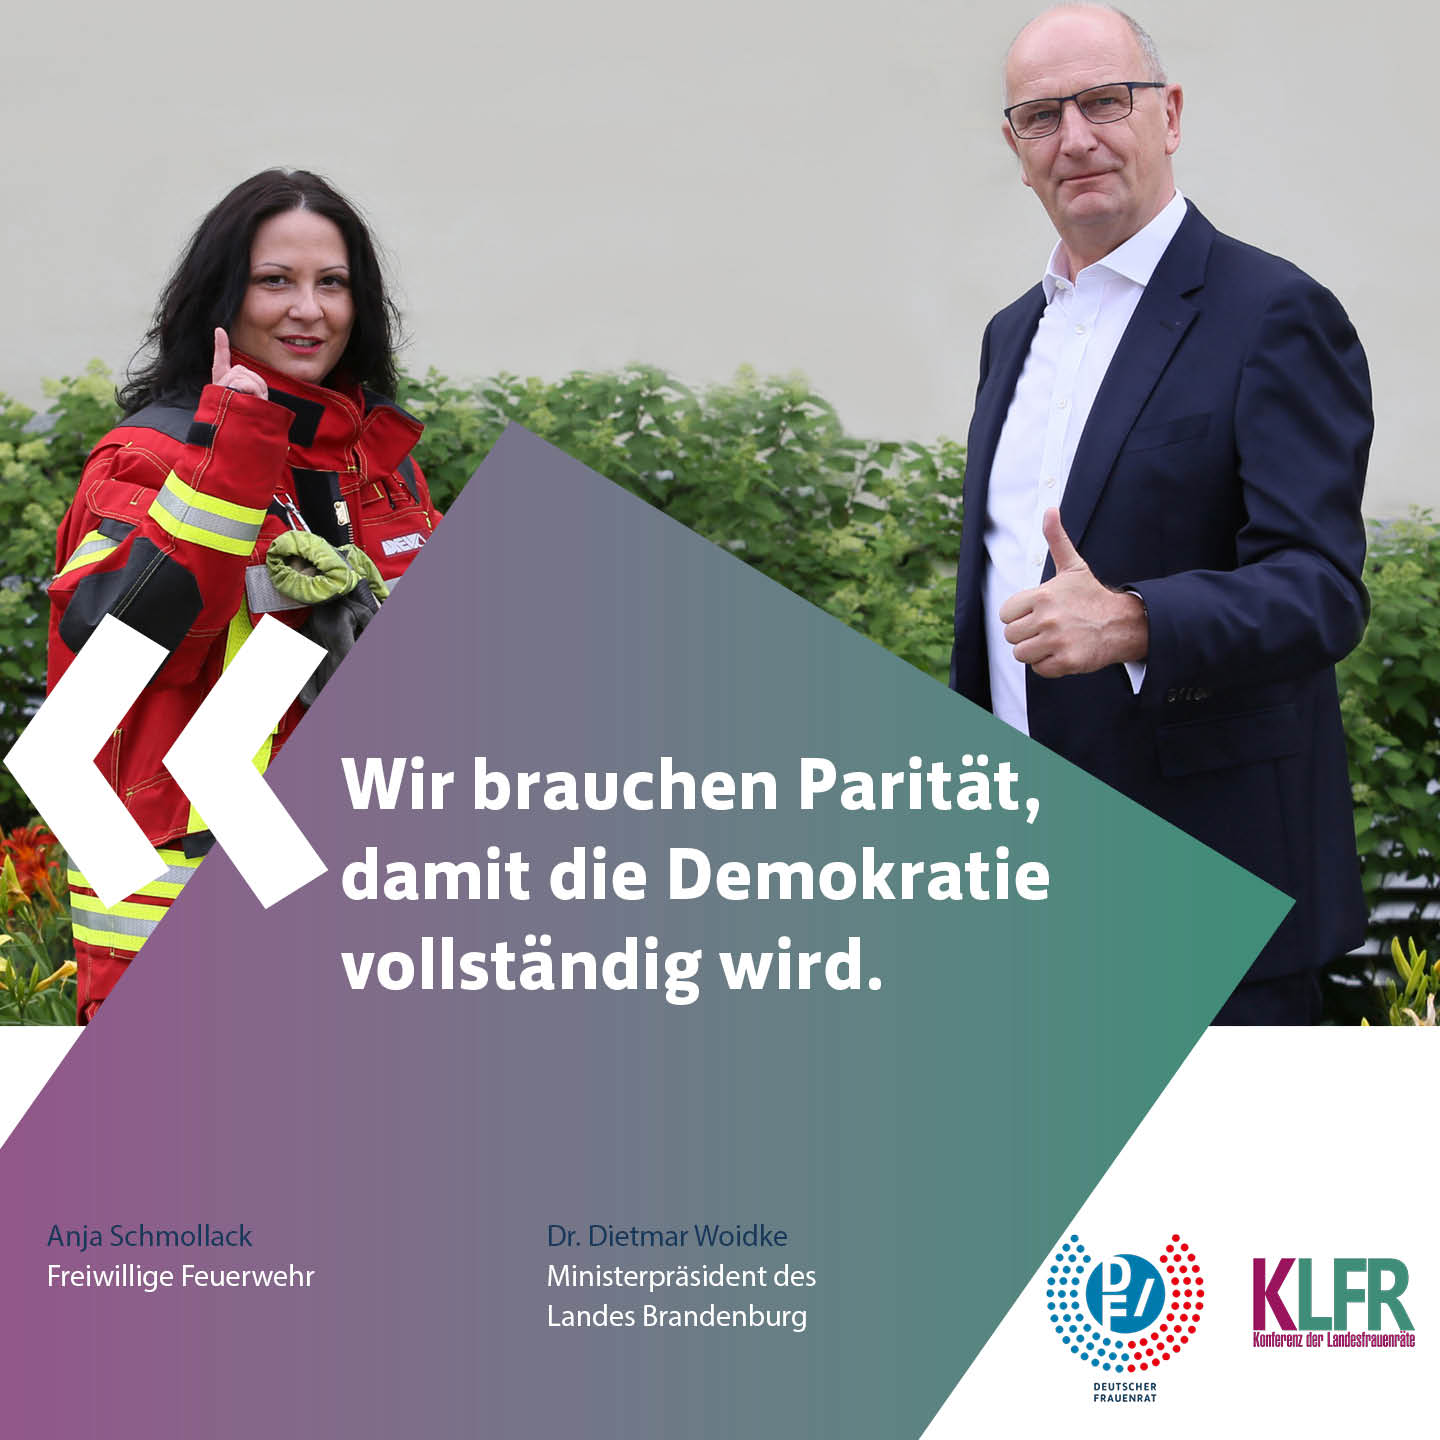 Anja Schmollack, Freiwillige Feuerwehr & Dr. Dietmar Woidke, Ministerpräsident des Landes Brandenburg: Wir brauchen Paritaet, damit die Demokratie vollständig wird.